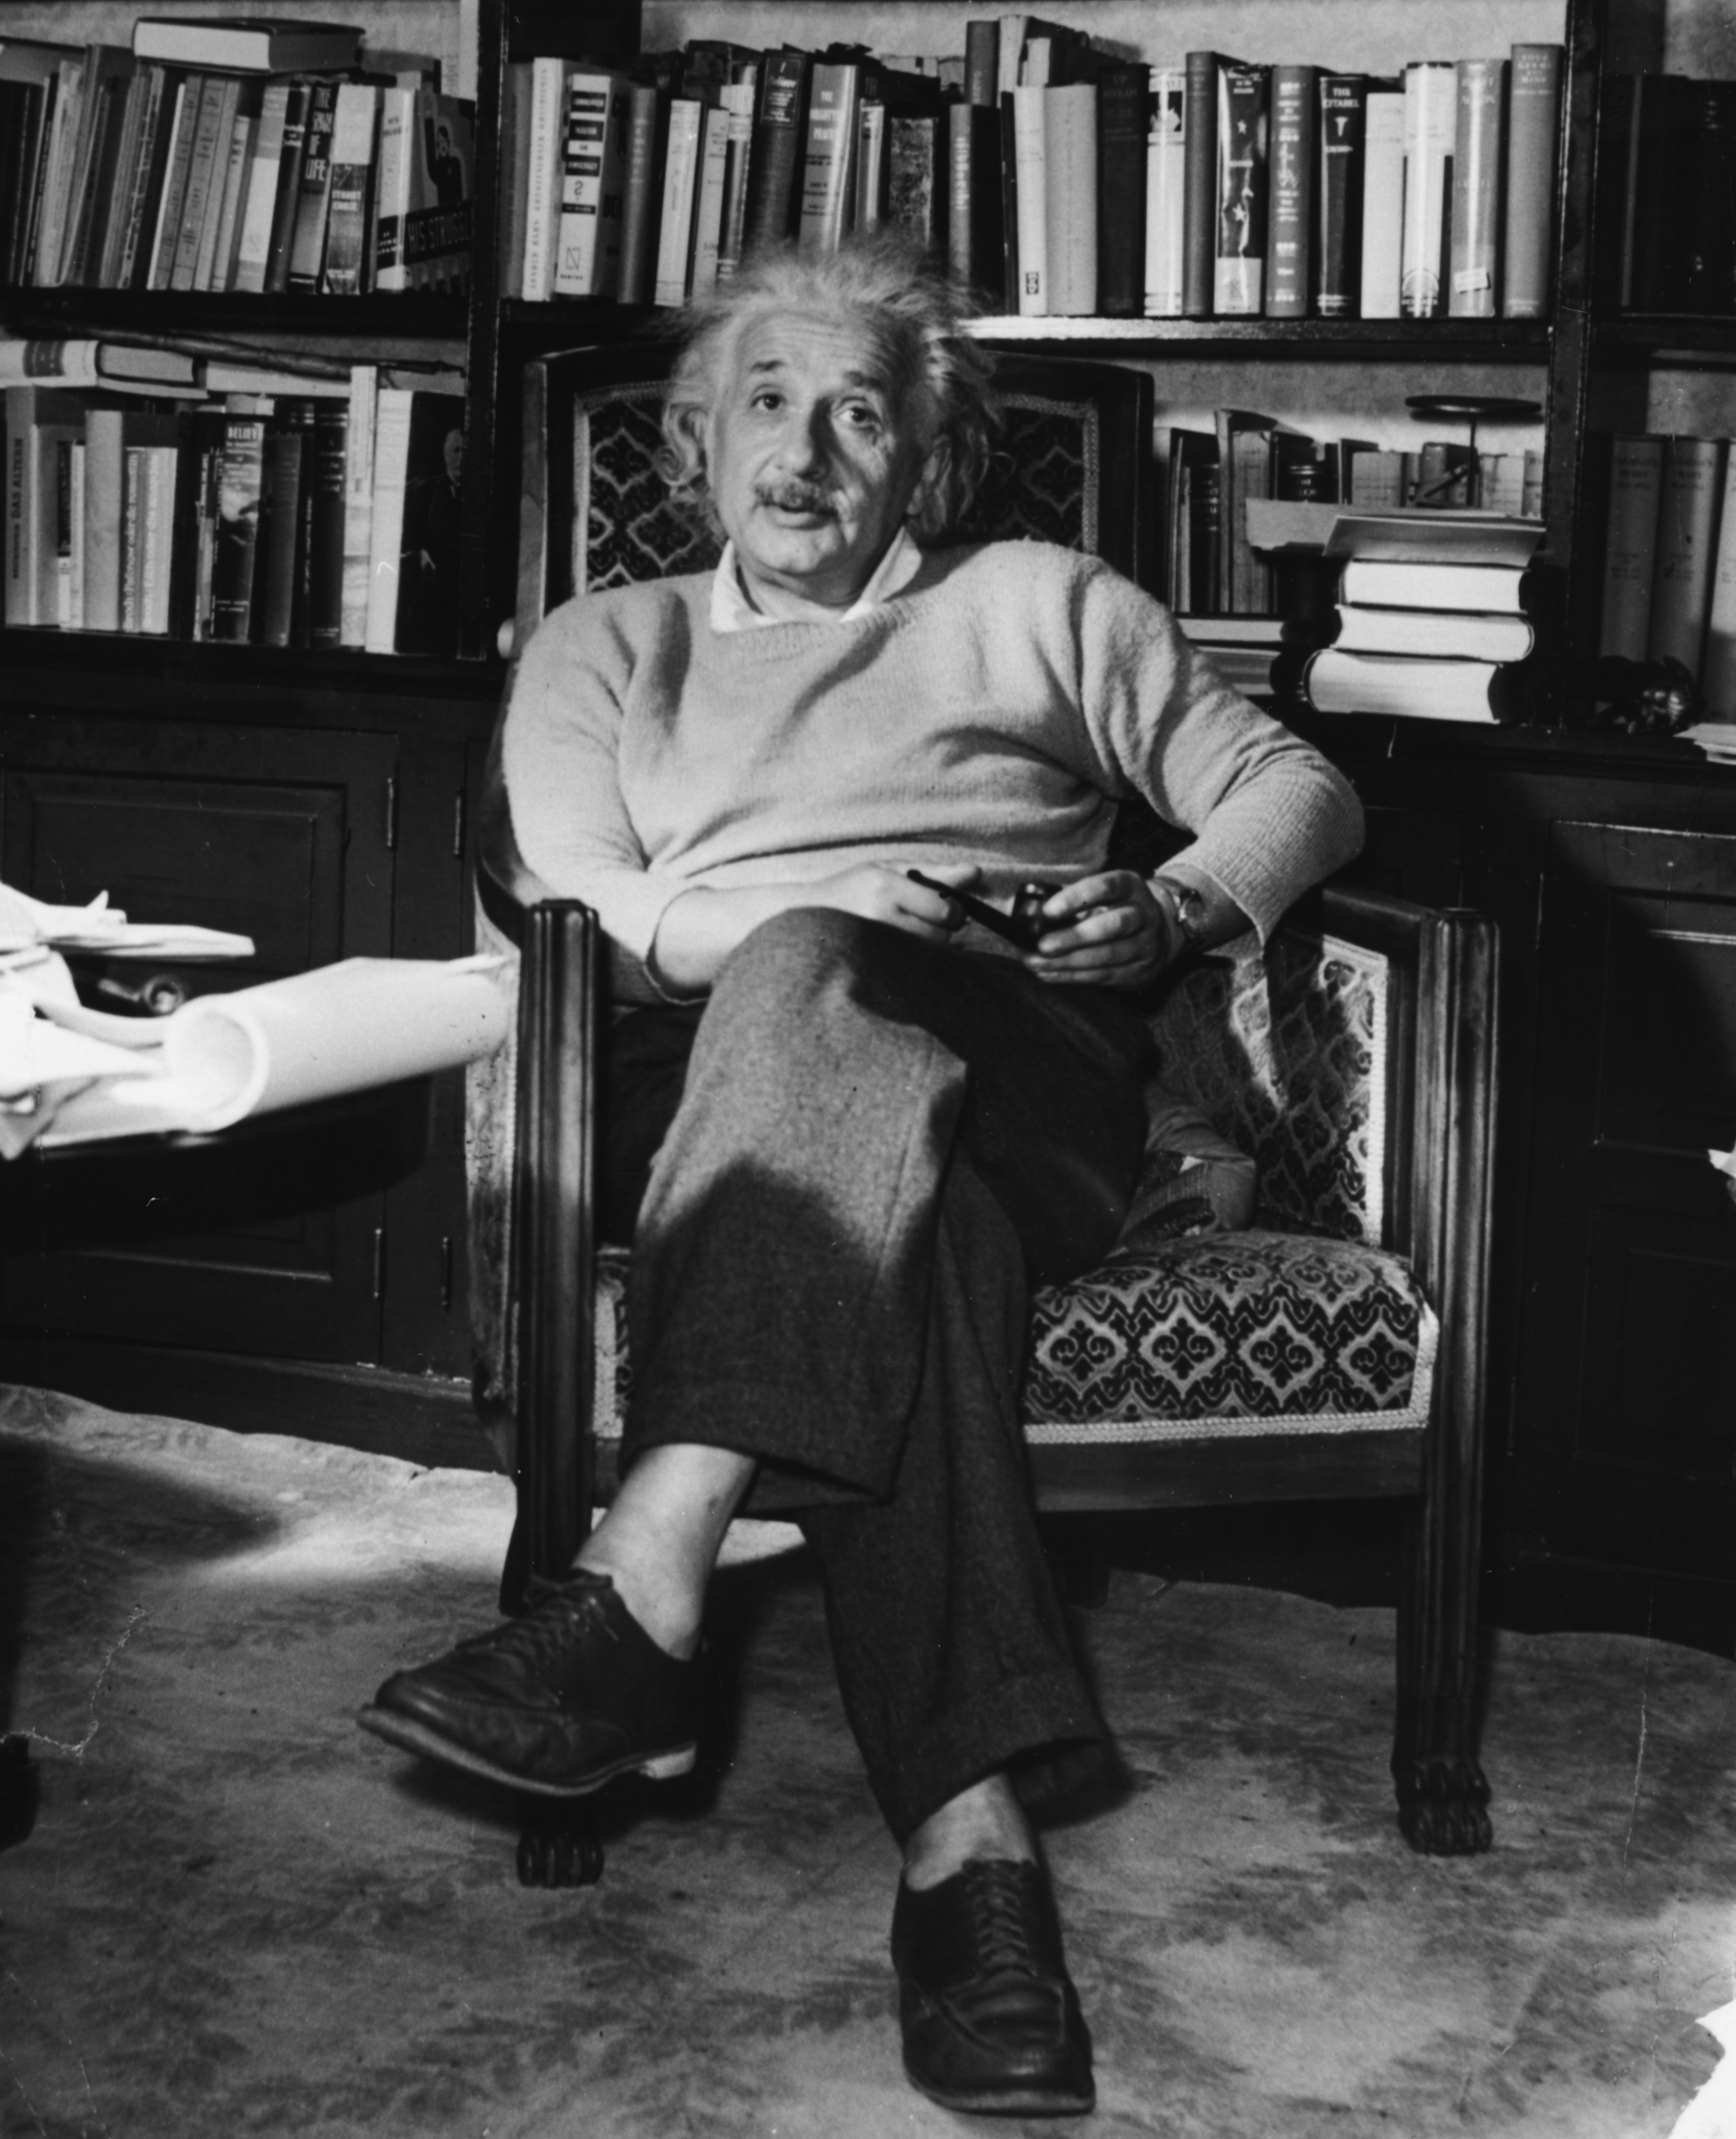 Albert Einstein photo